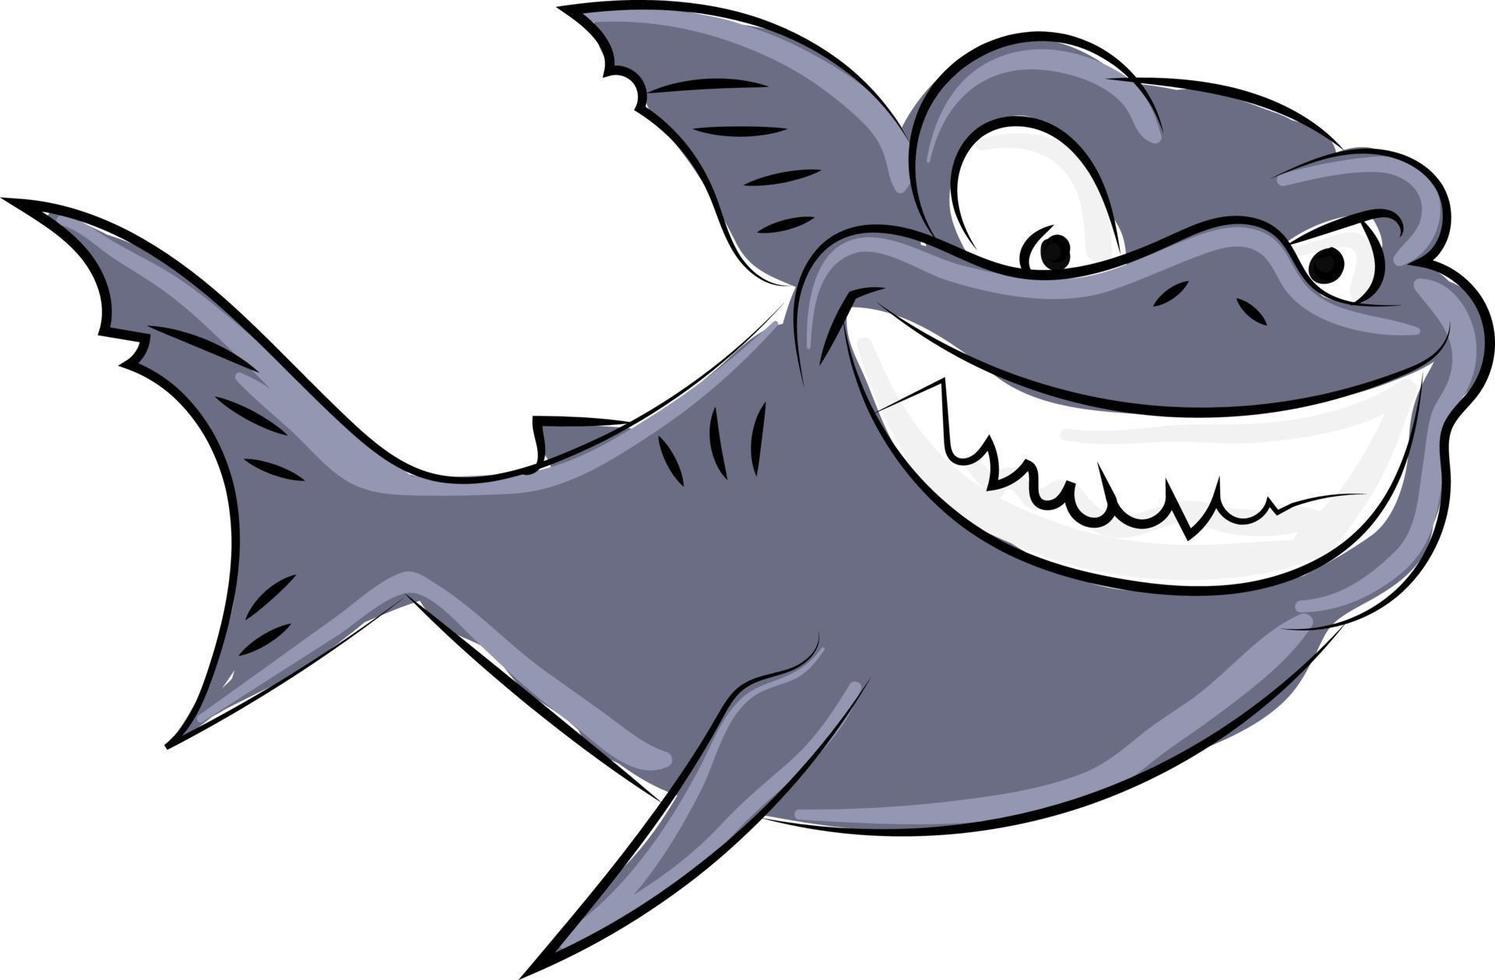 Tiburón enojado, ilustración, vector sobre fondo blanco.